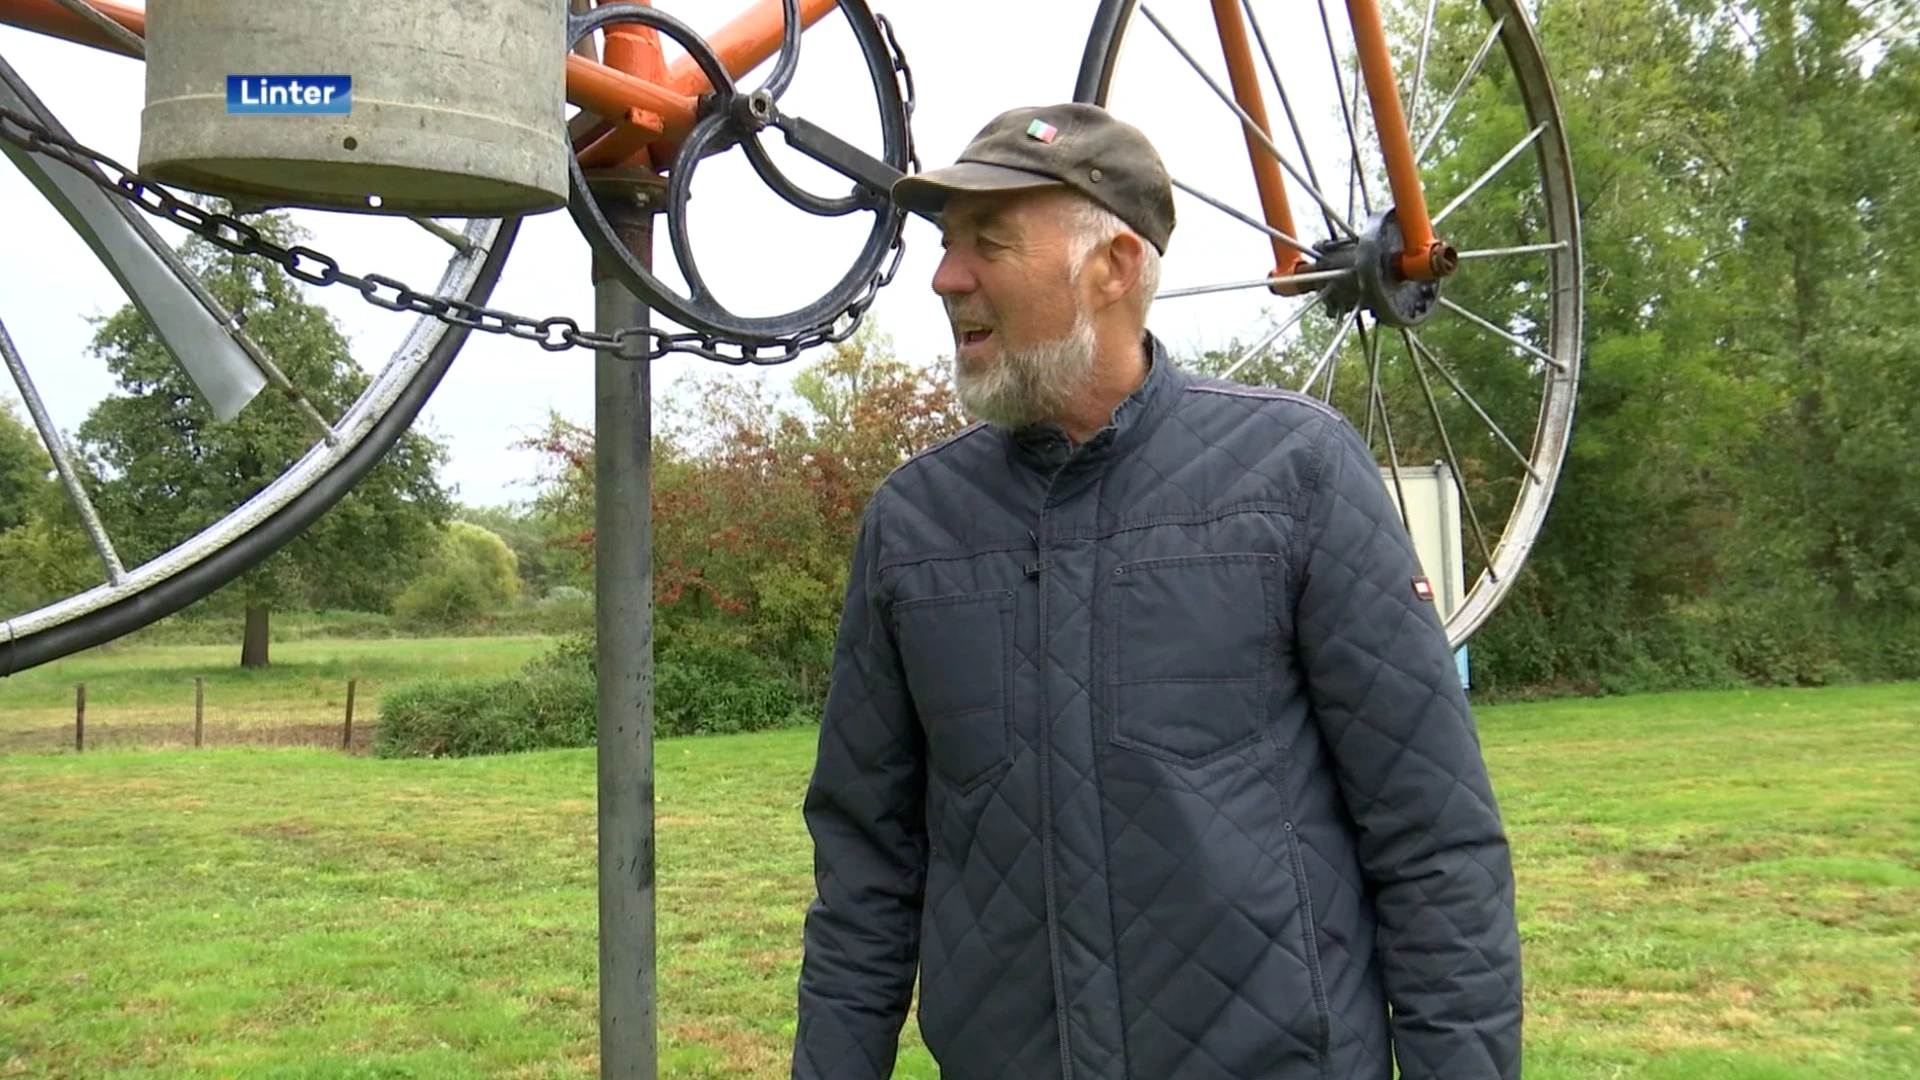 Reuzegrote fiets dient als windwijzer in Linter: "Gemaakt van materialen die ik nog had liggen"